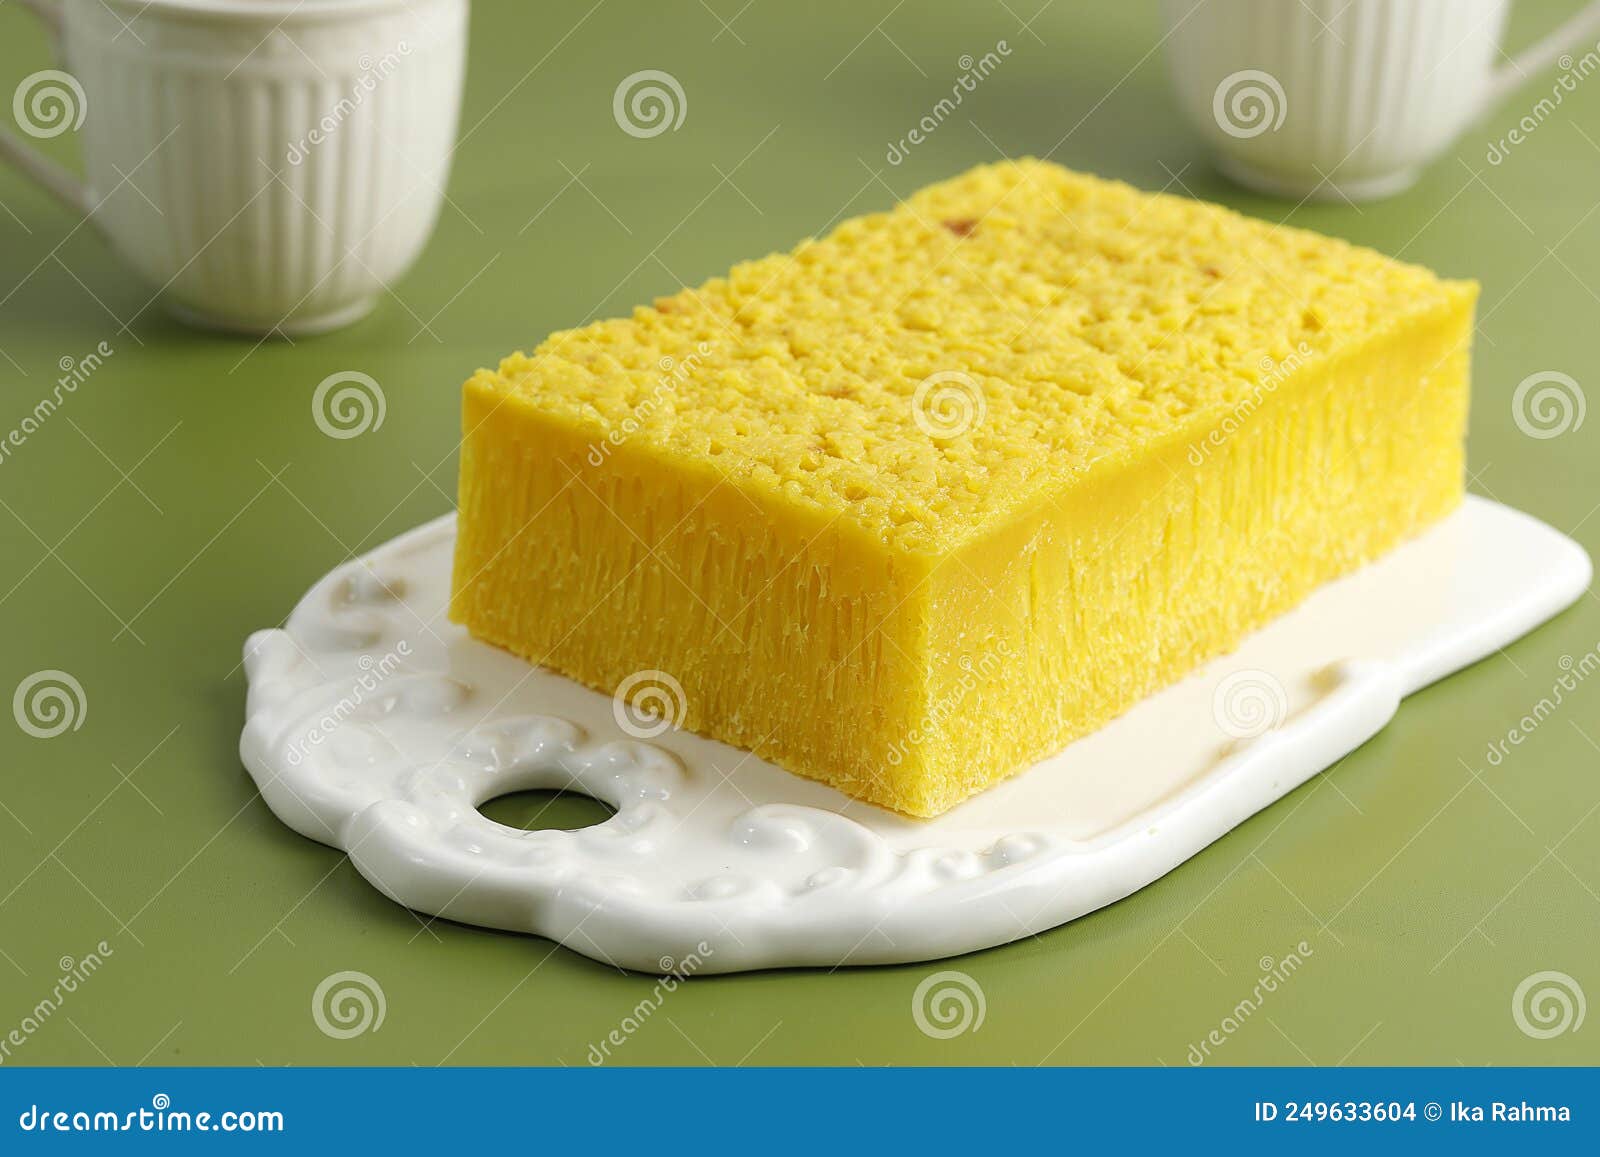 бика амбон желтый медовый пирог желтого цвета, популярный из меданскойиндонии. желтый цвет получен из турмерики Стоковое Фото - изображениенасчитывающей печенье, бульвара: 249633604